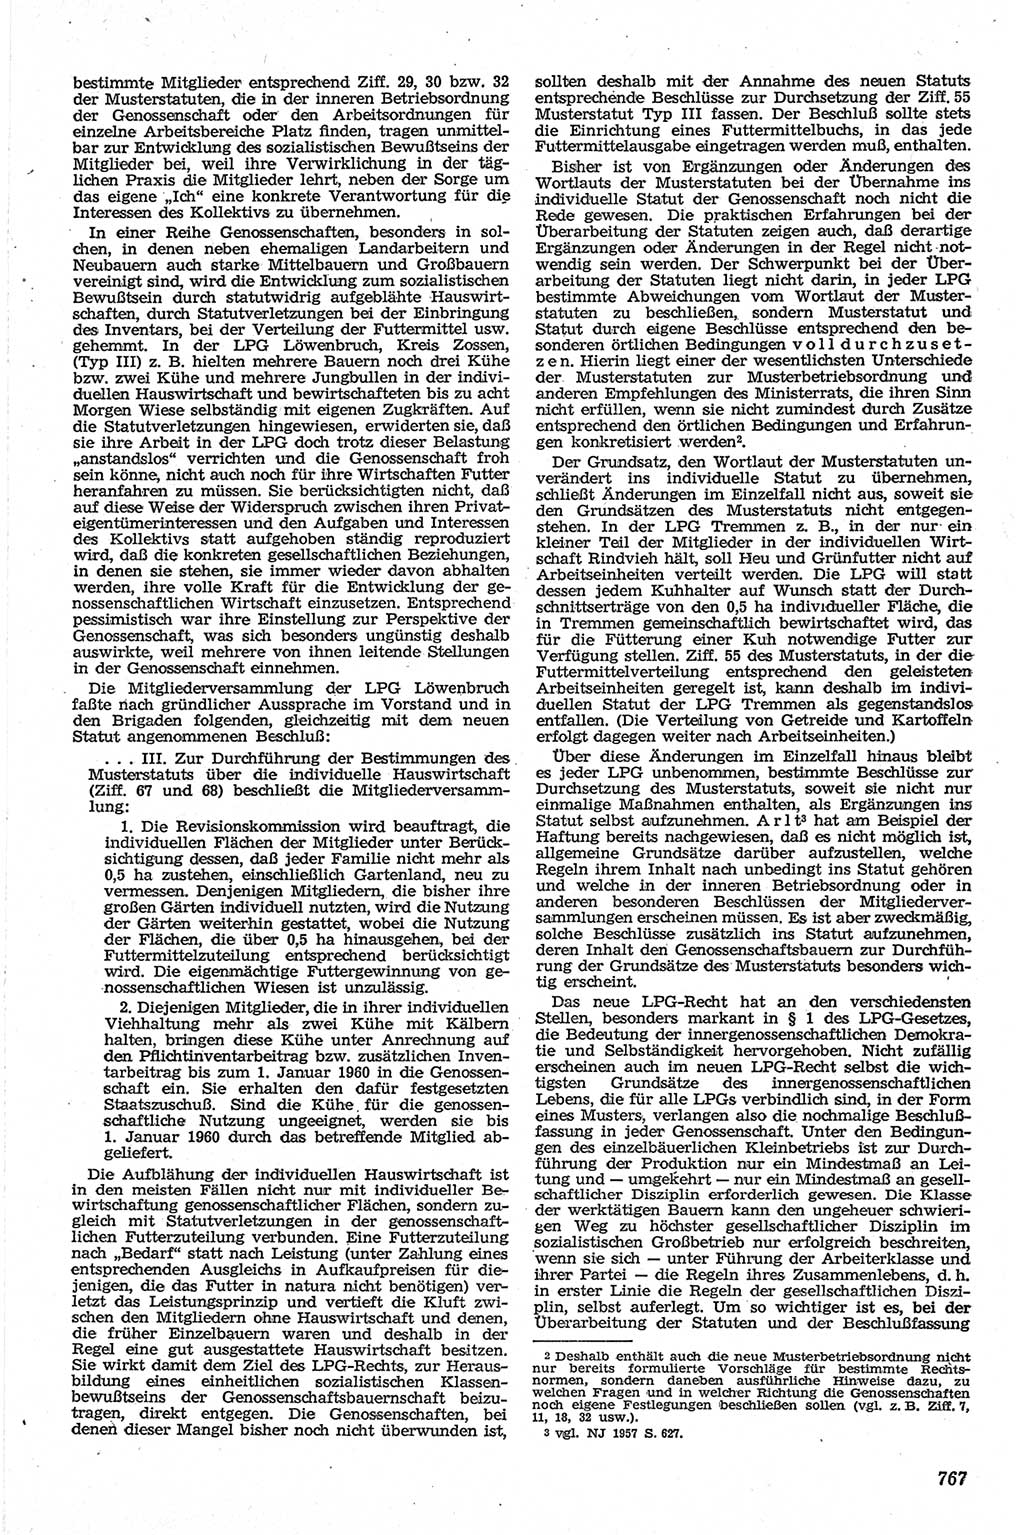 Neue Justiz (NJ), Zeitschrift für Recht und Rechtswissenschaft [Deutsche Demokratische Republik (DDR)], 13. Jahrgang 1959, Seite 767 (NJ DDR 1959, S. 767)